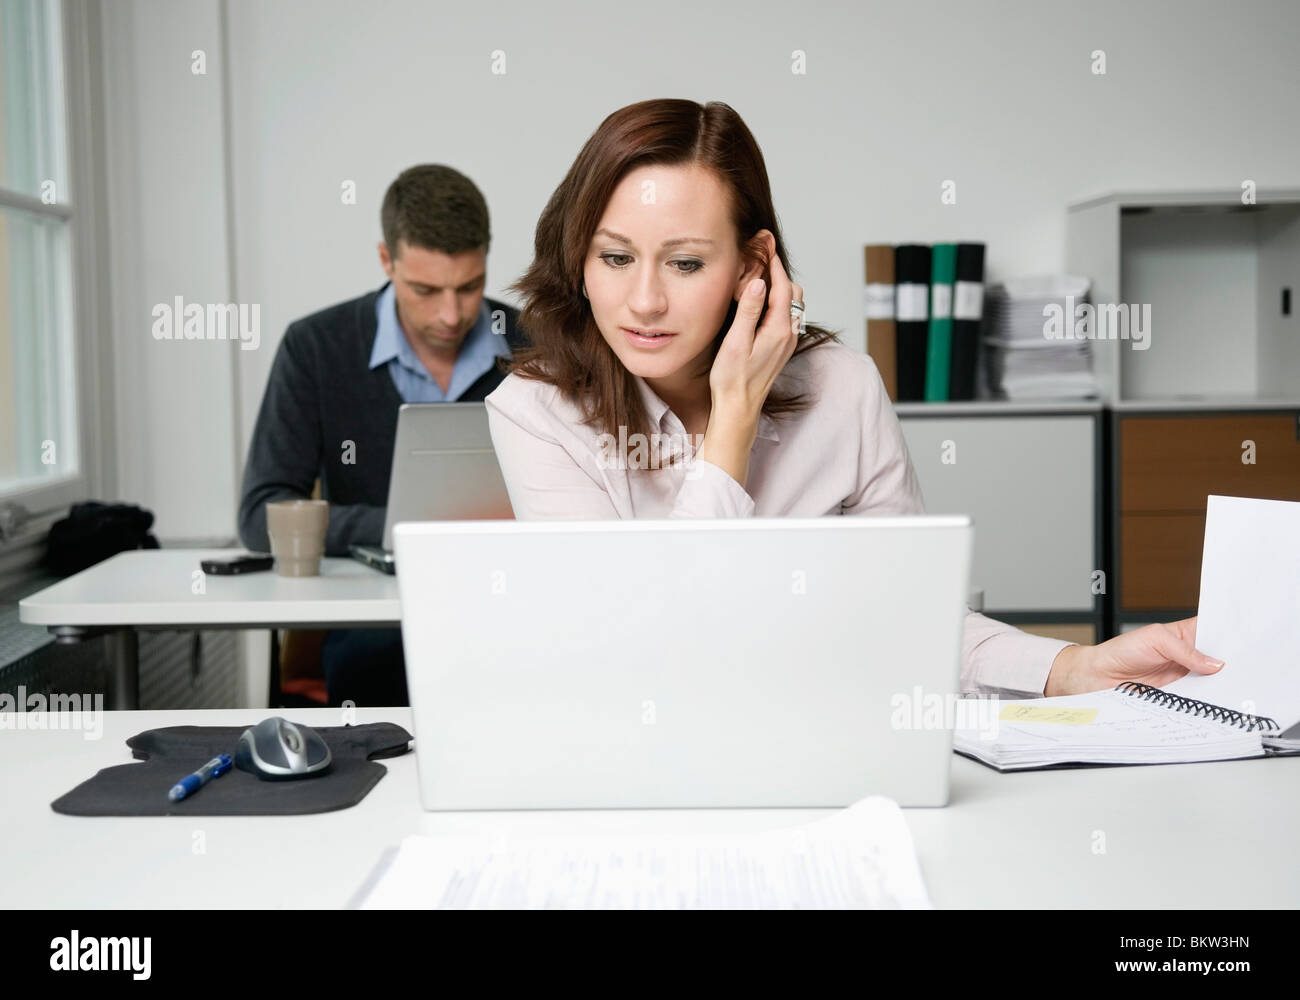 Donna che guarda al portatile, collega di lavoro in background Foto Stock